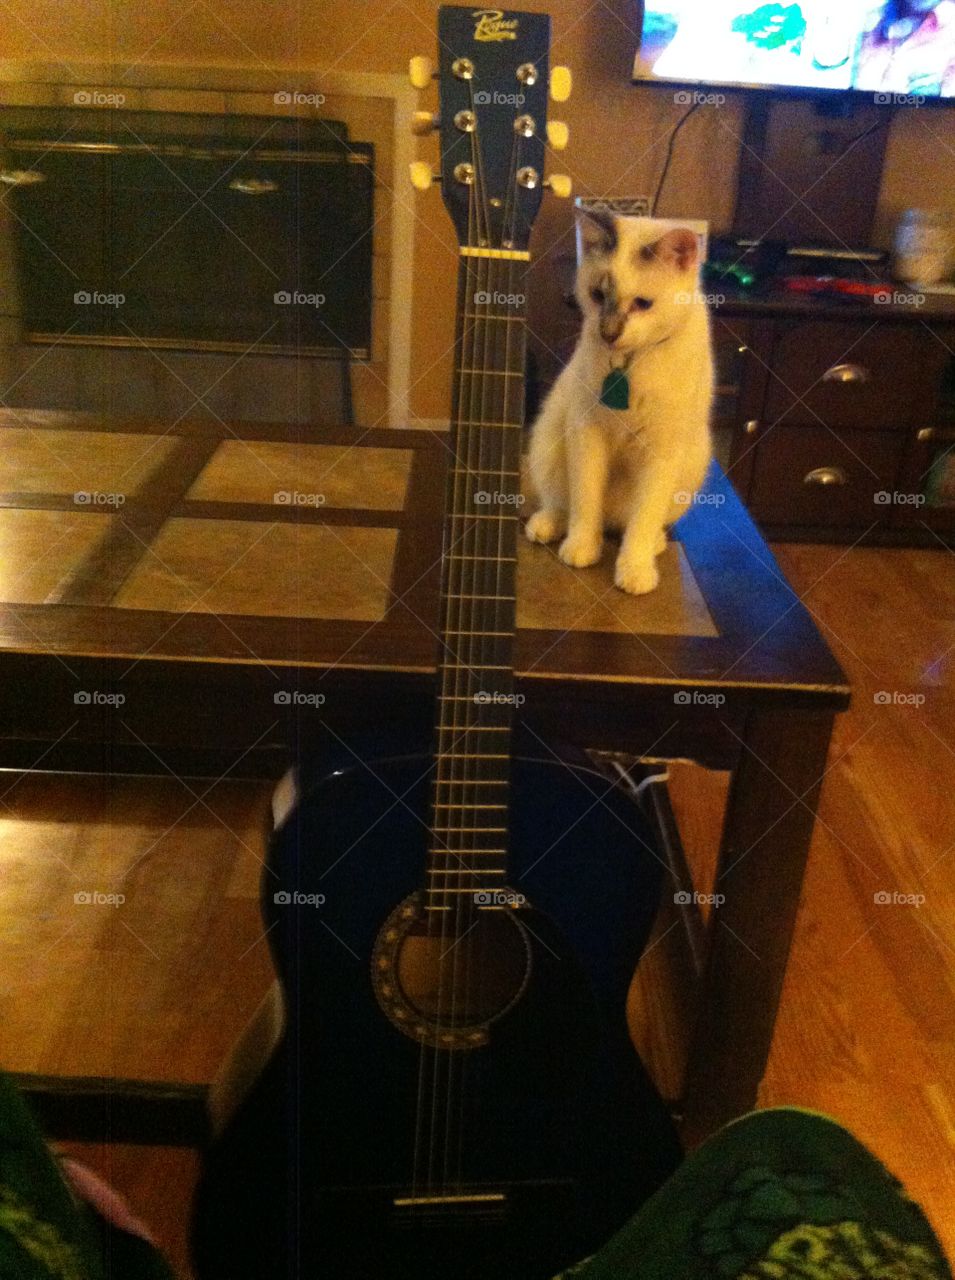 Yayo and his guitar